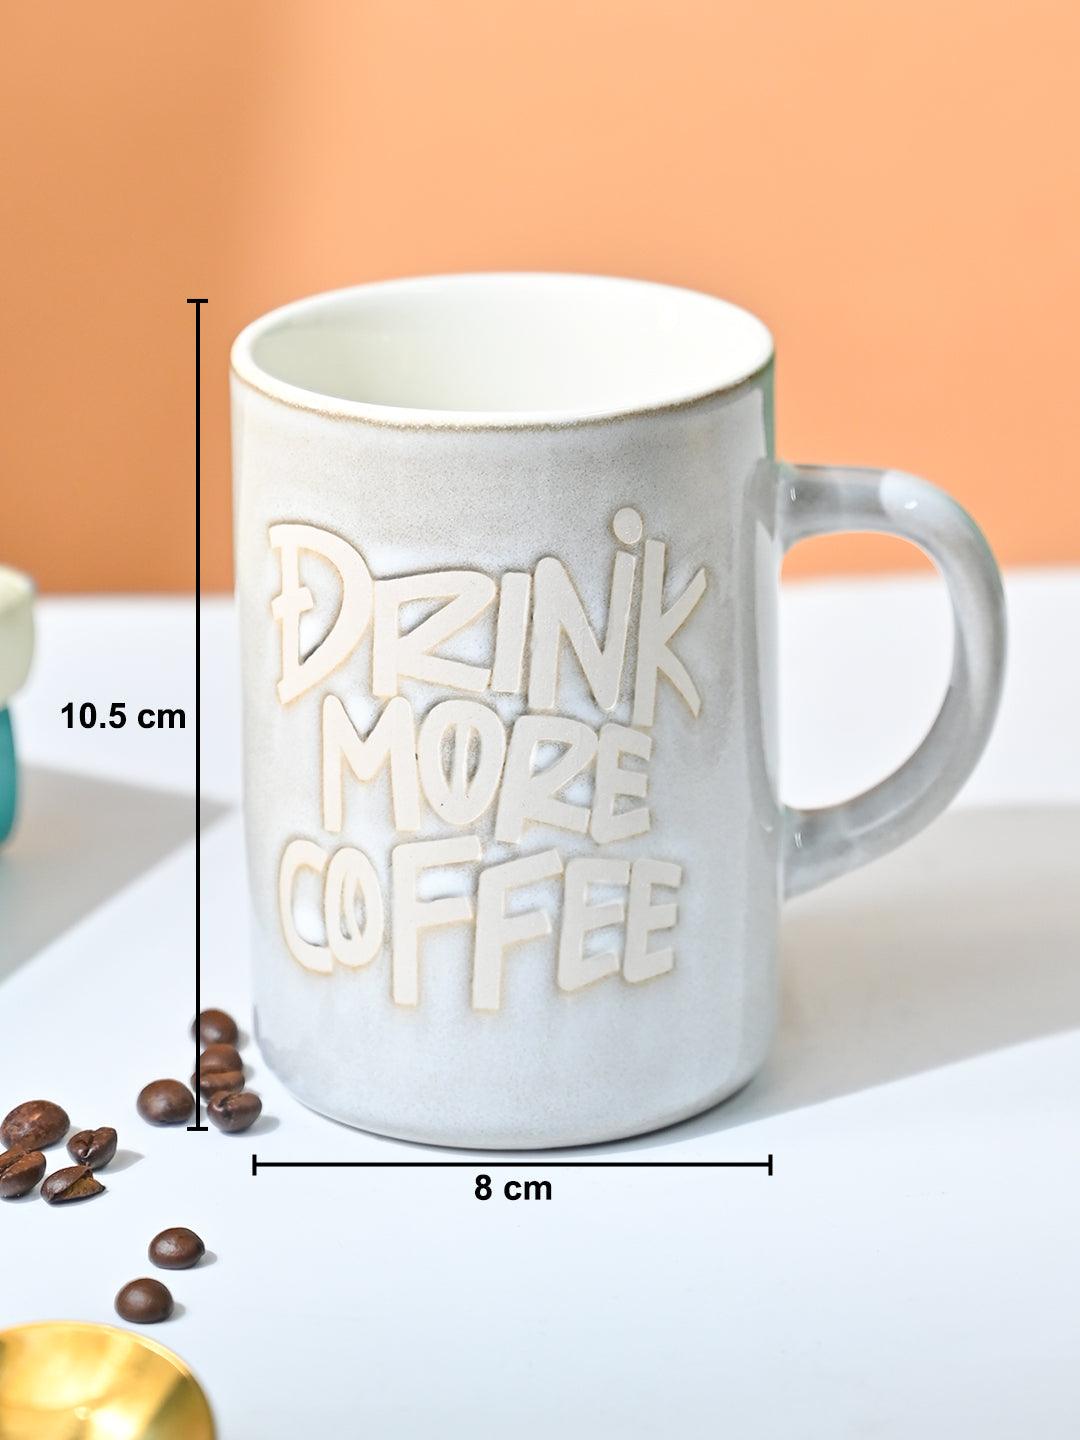 VON CASA Light Blue Mug (Drink More Coffee) - 420Ml - MARKET99